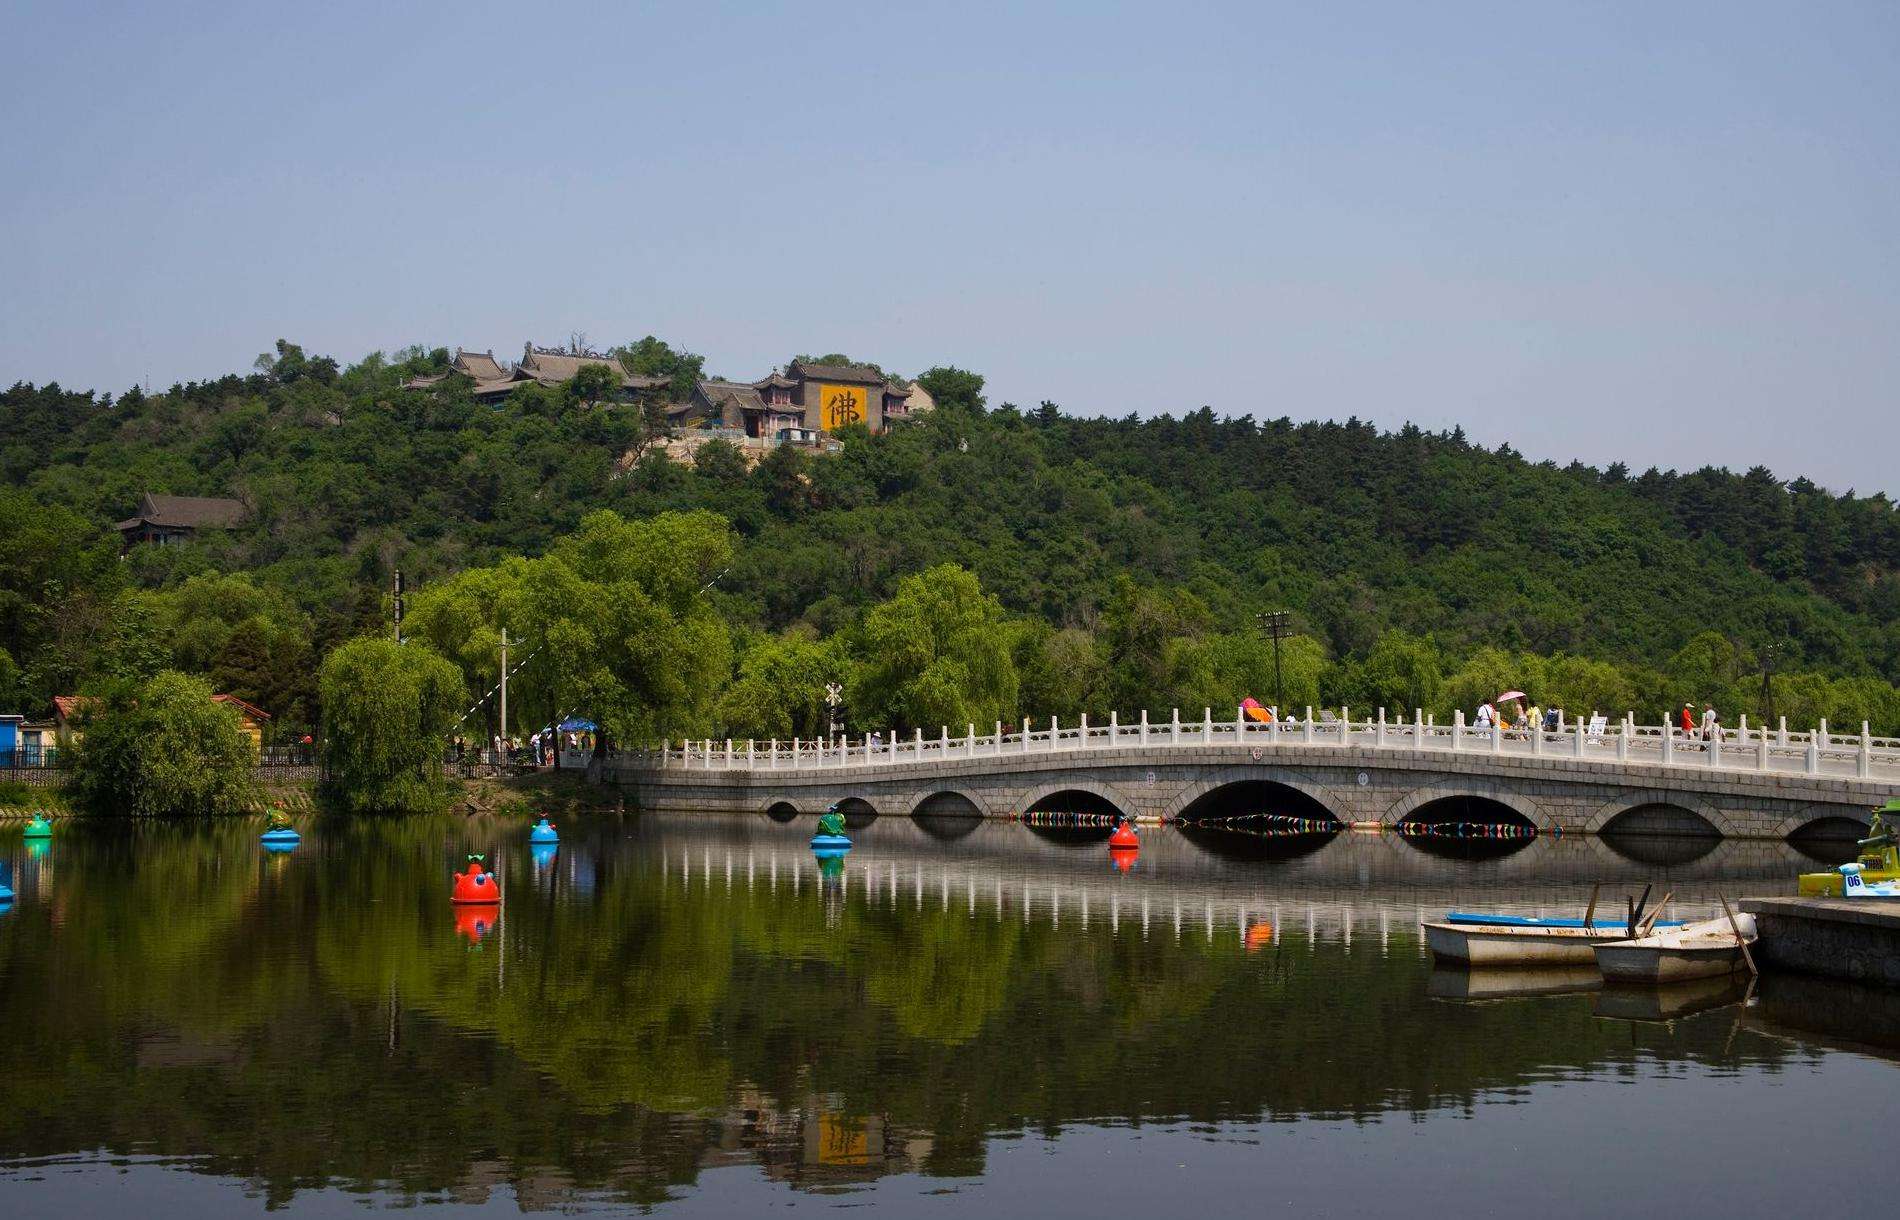 有北国江城美誉的吉林市有哪几处风景名胜?